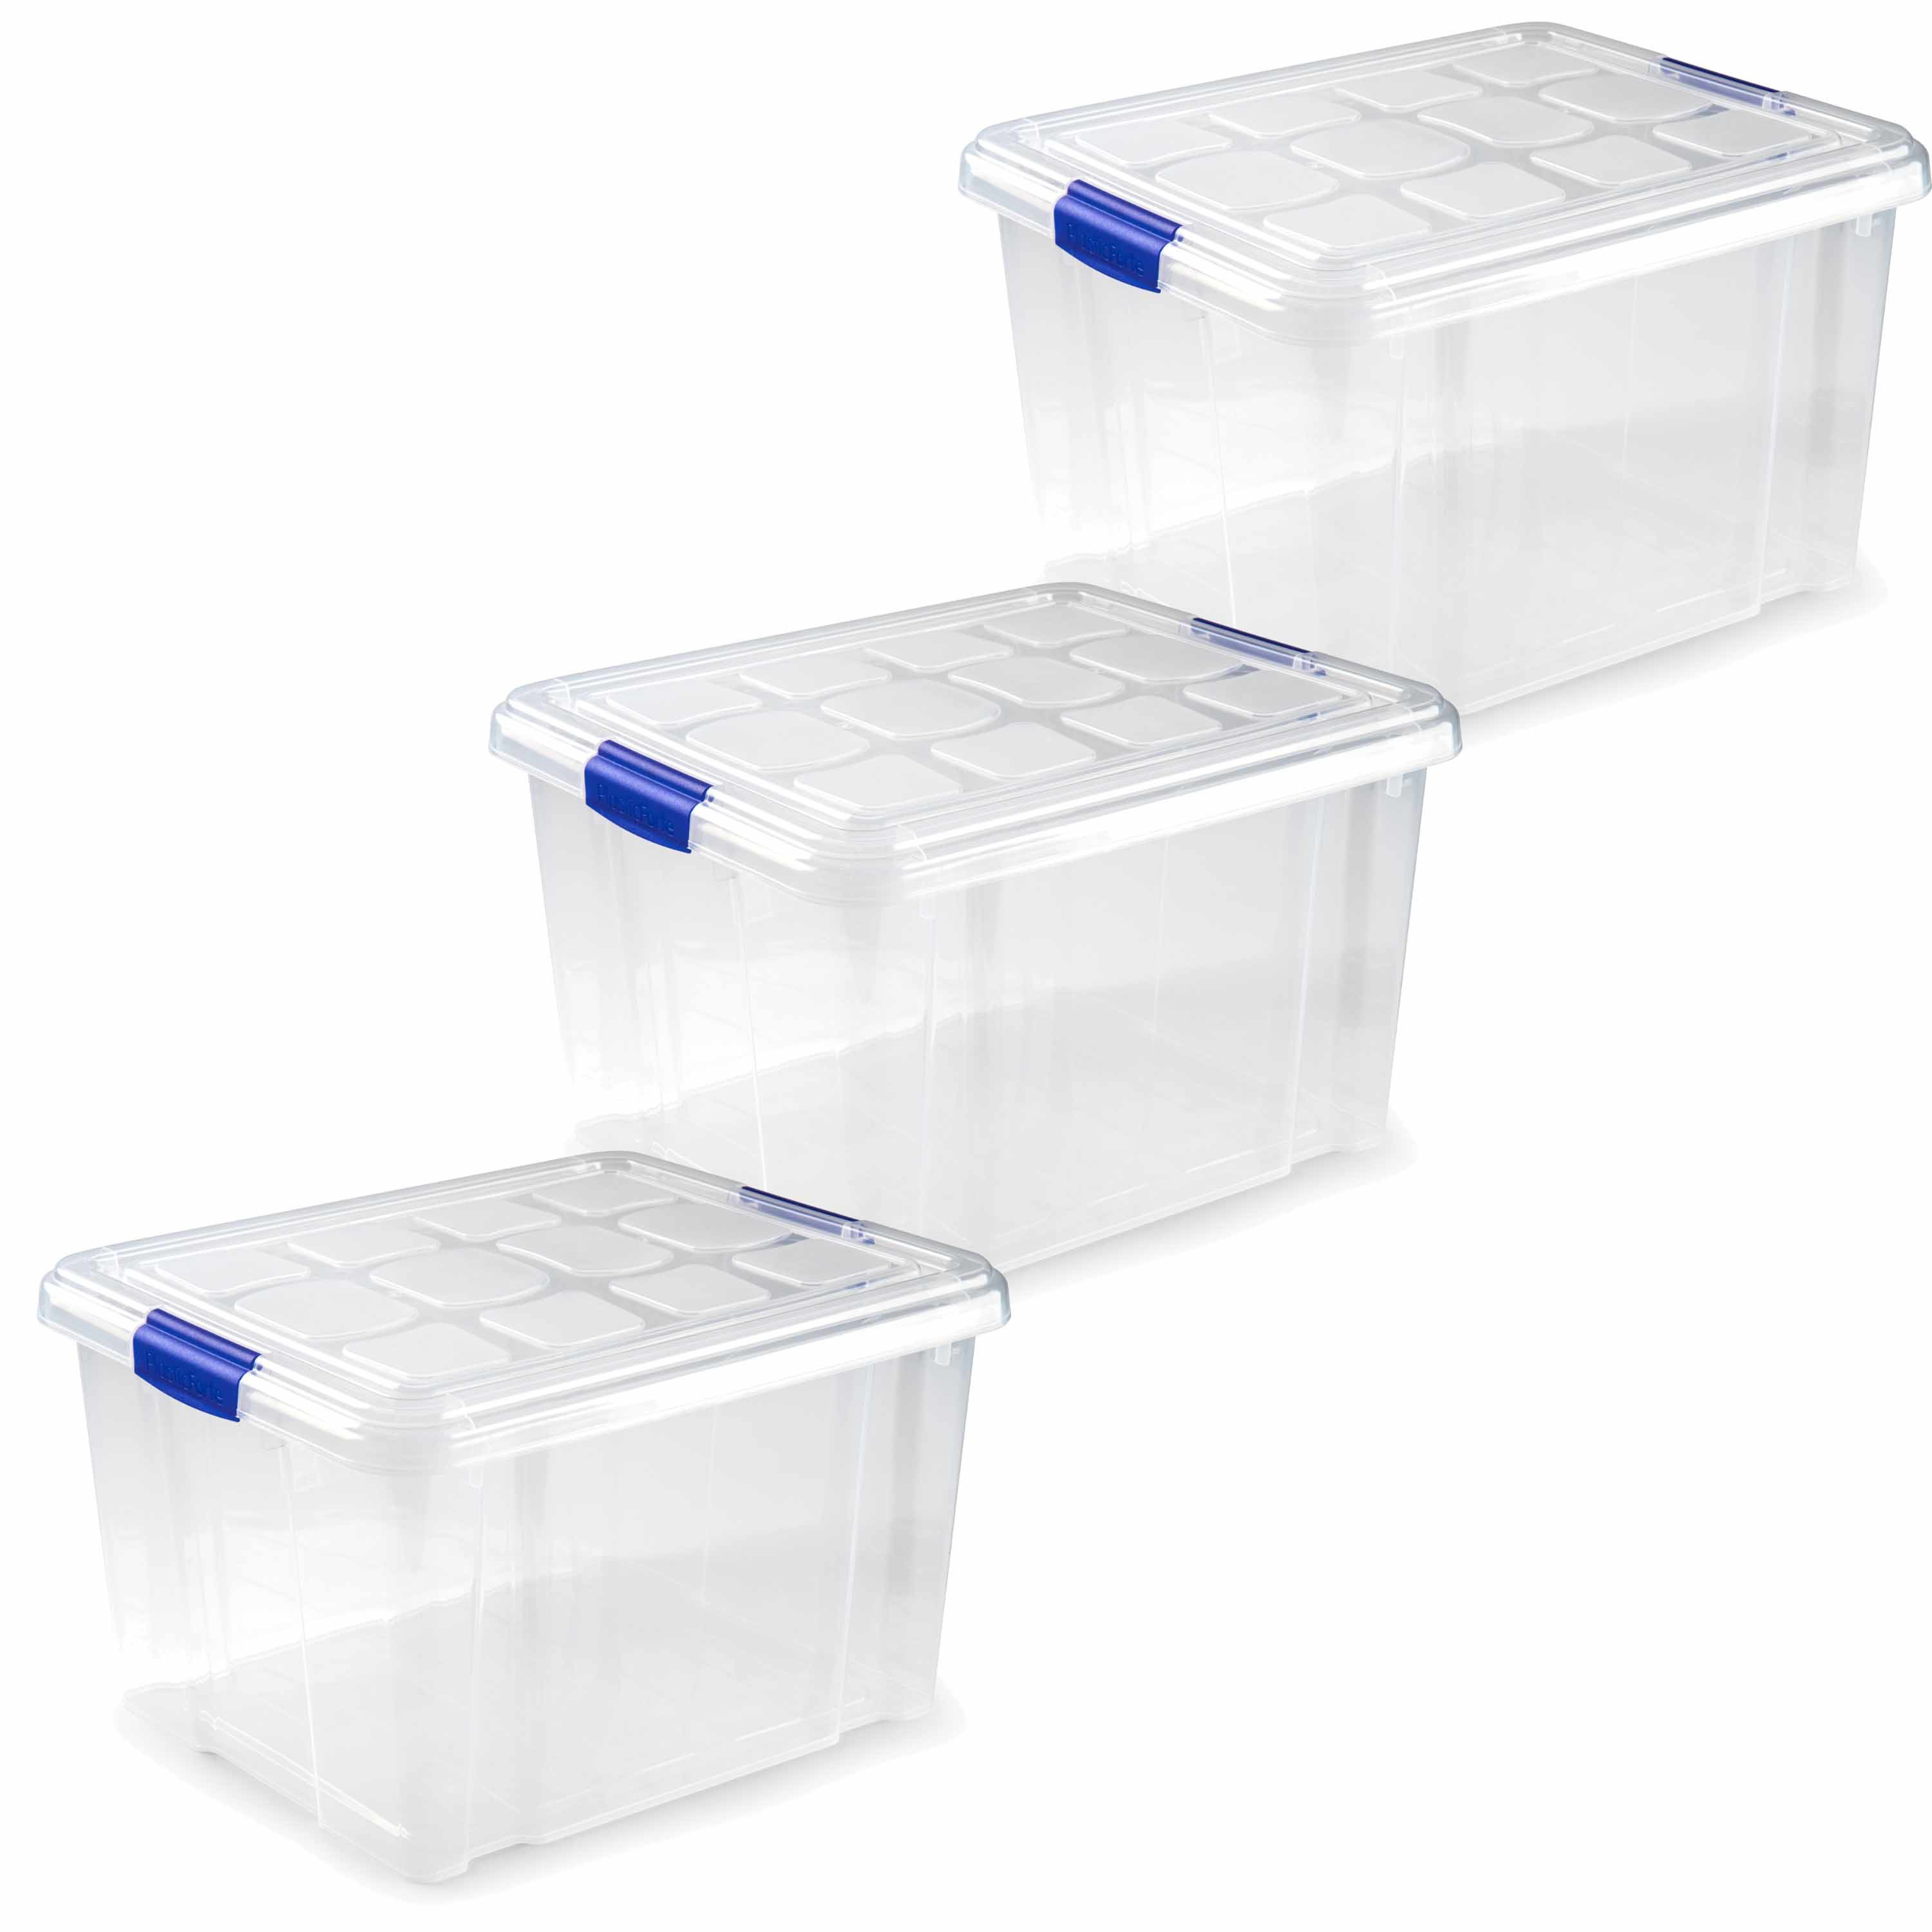 3x stuks opslagboxen-bakken-organizers met deksel 25 liter 42 x 36 x 25 cm transparant